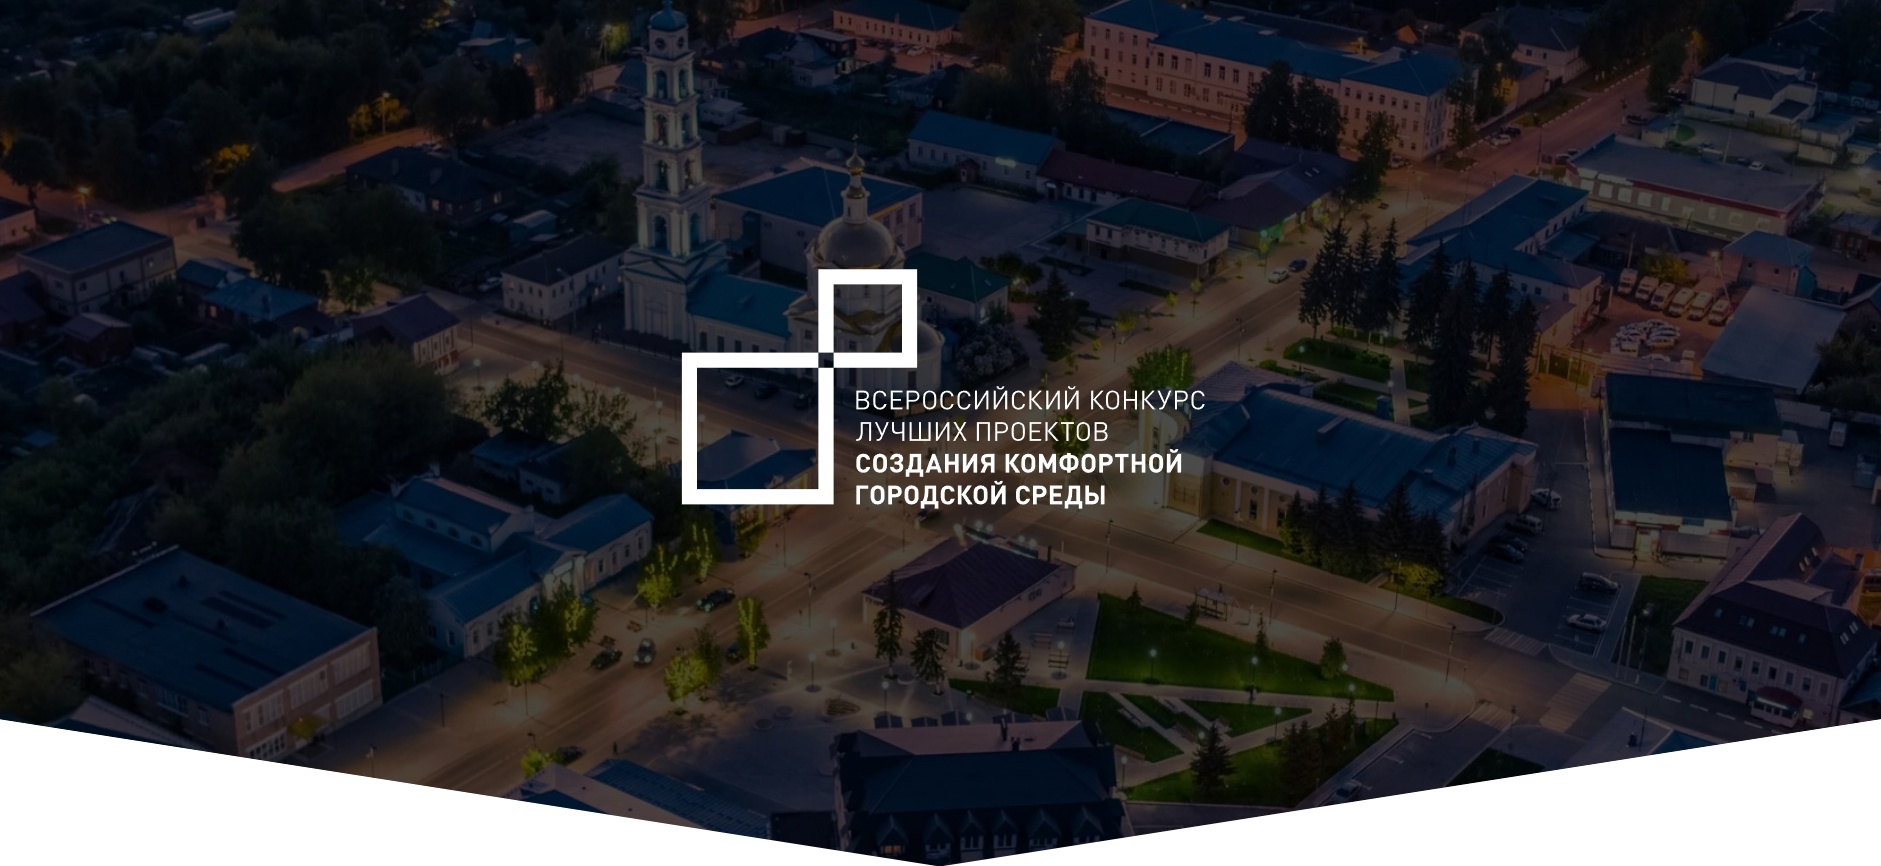 Три города Смоленской области победили в конкурсе проектов создания комфортной городской среды